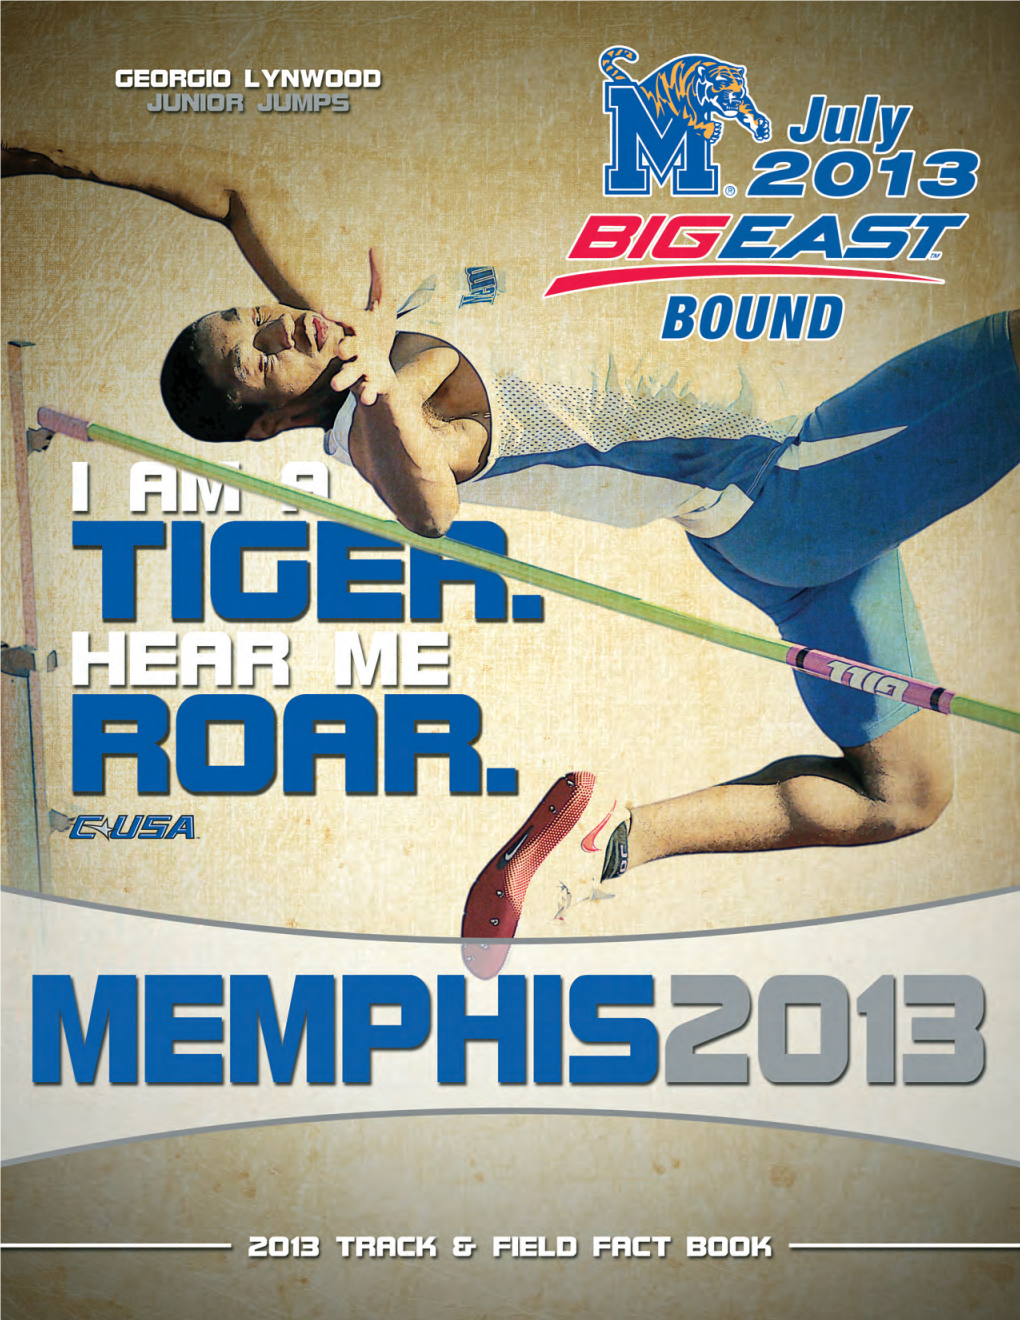 2013 Memphis Spring Sports Page 1 2 0 1 3 M E M P H I S T R a C K & F I E L D F a C T B O O K